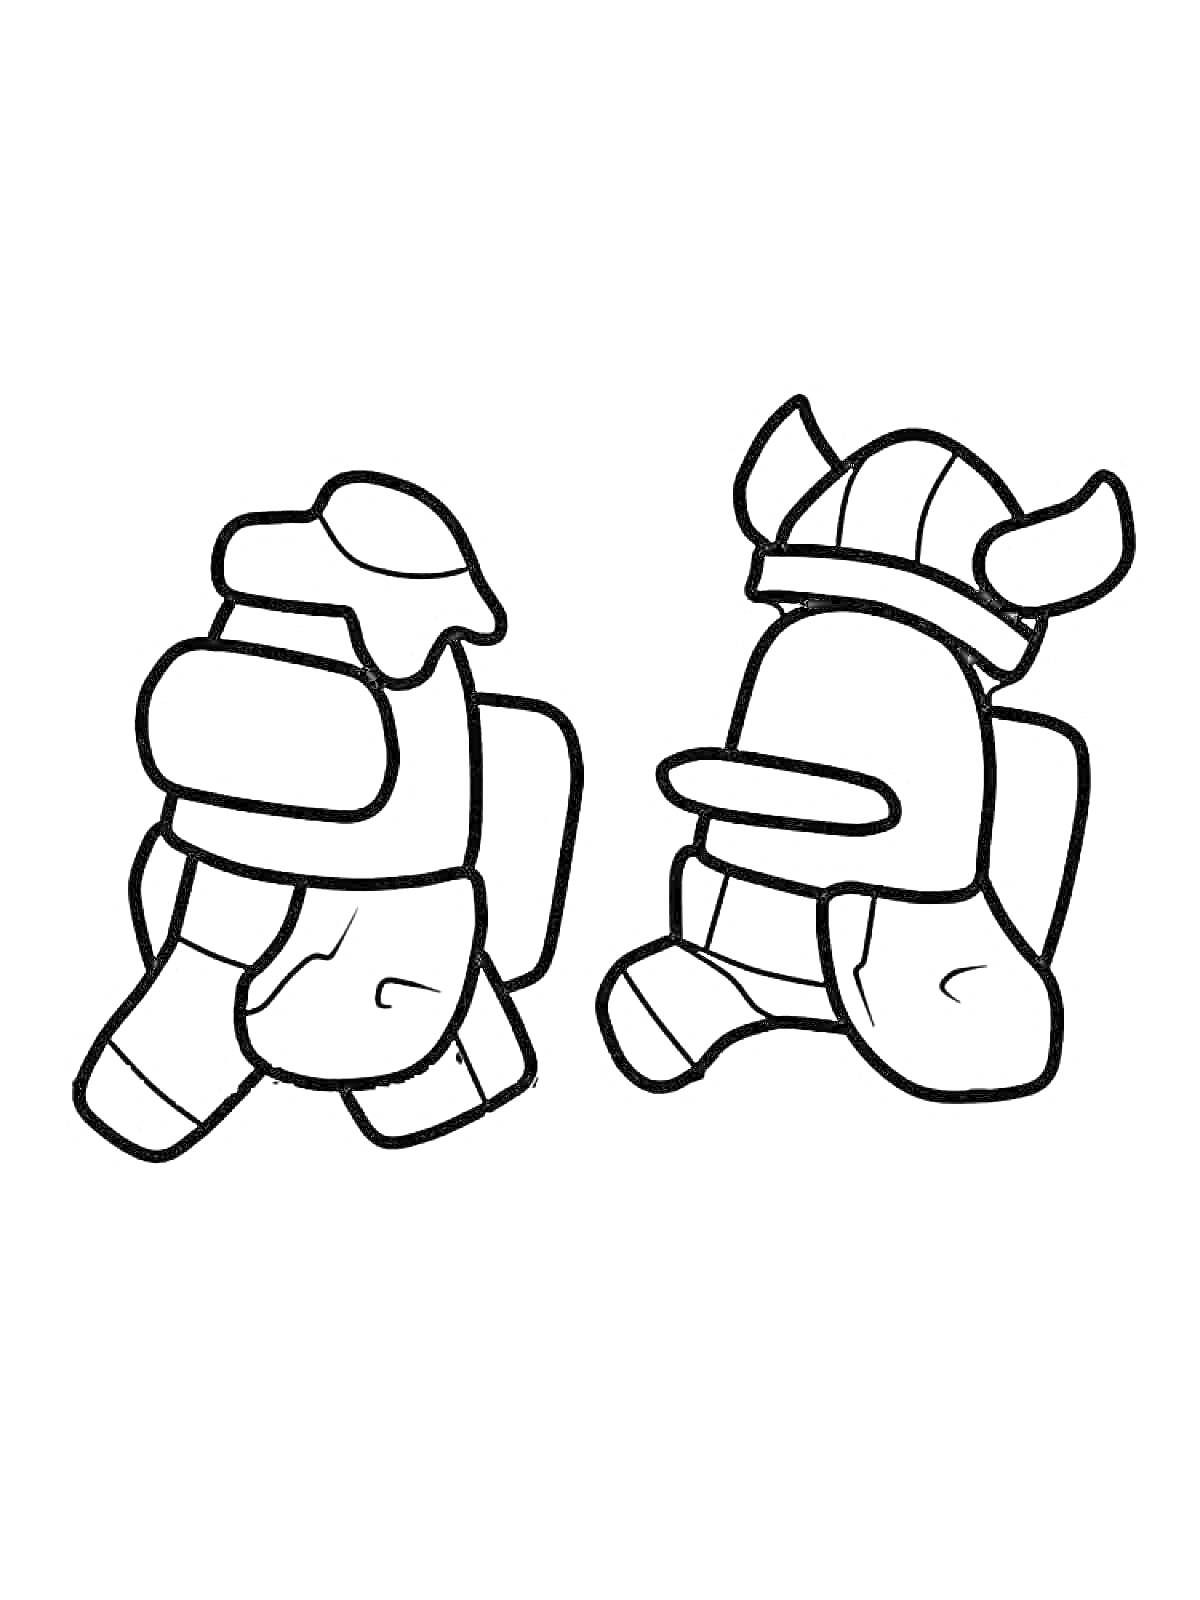 Раскраска Два персонажа из игры Амонг Ас, один в шляпе и другой в шлеме викинга